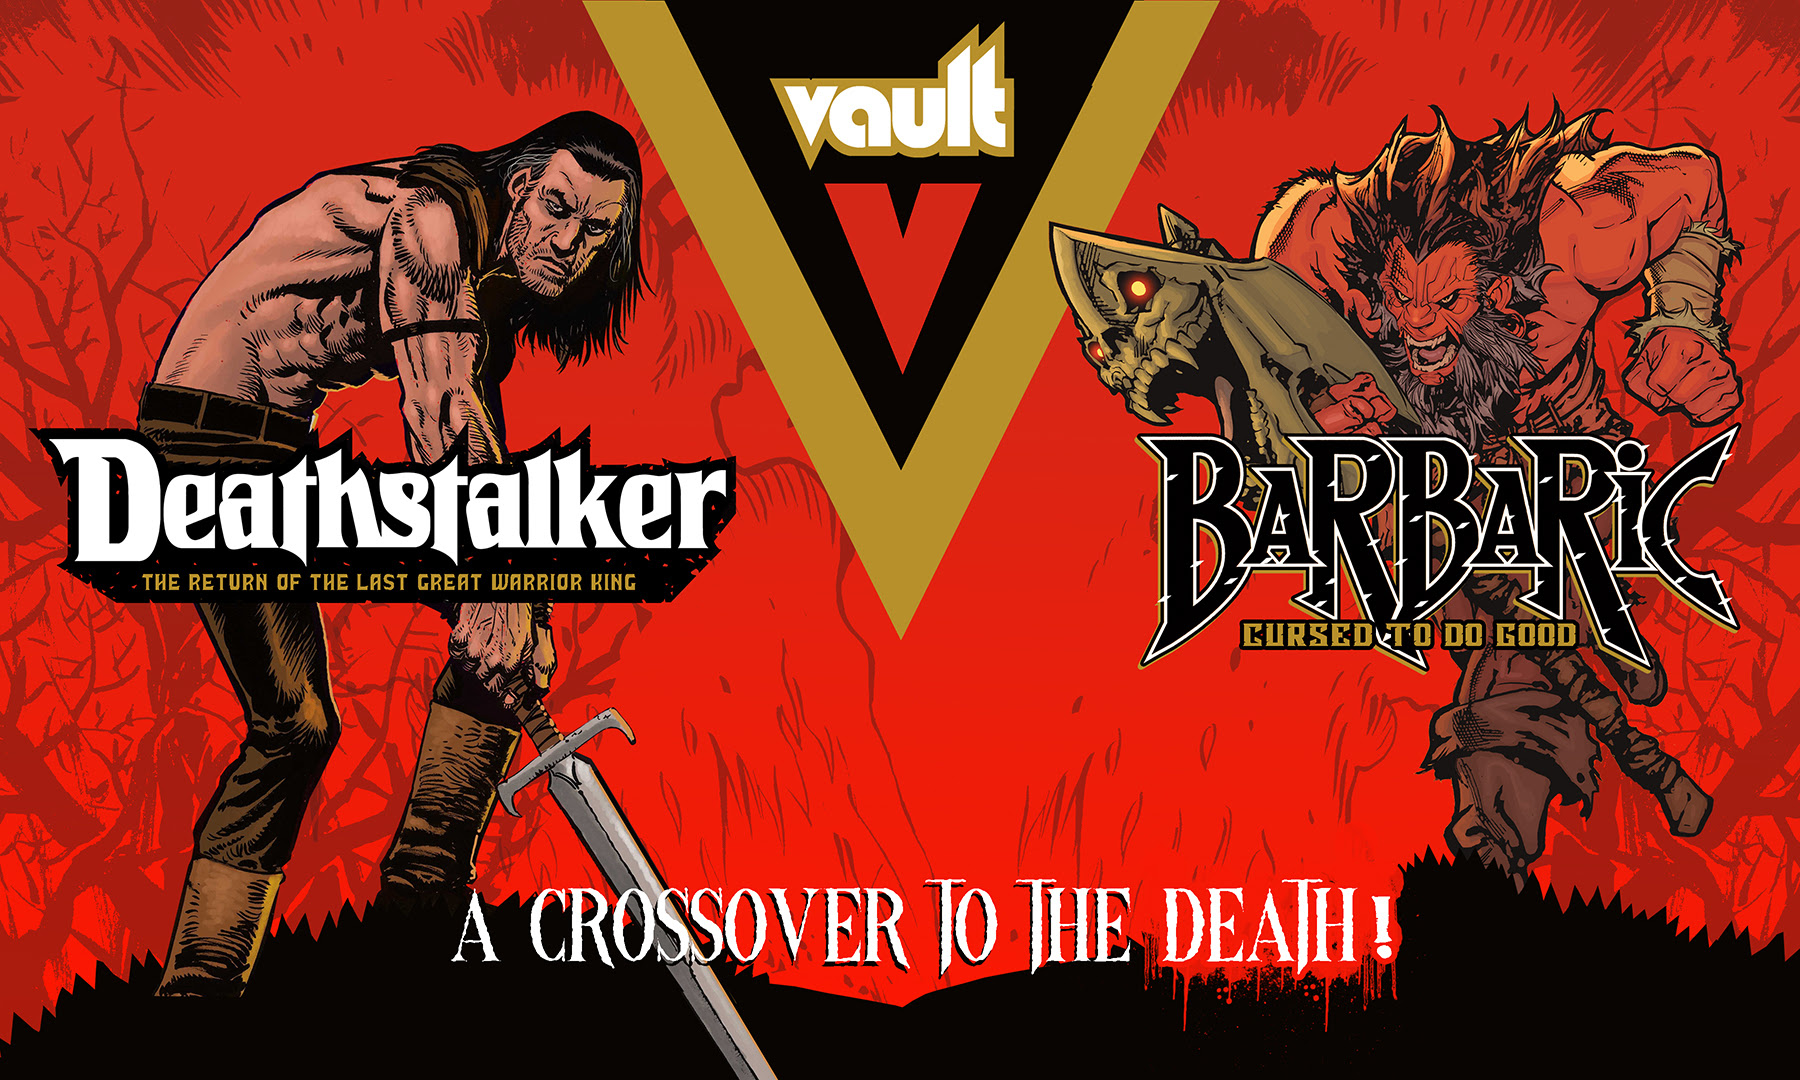 Vault adds 'Barbaric vs. Deathstalker' one-shot for 'Deathstalker' Kickstarter